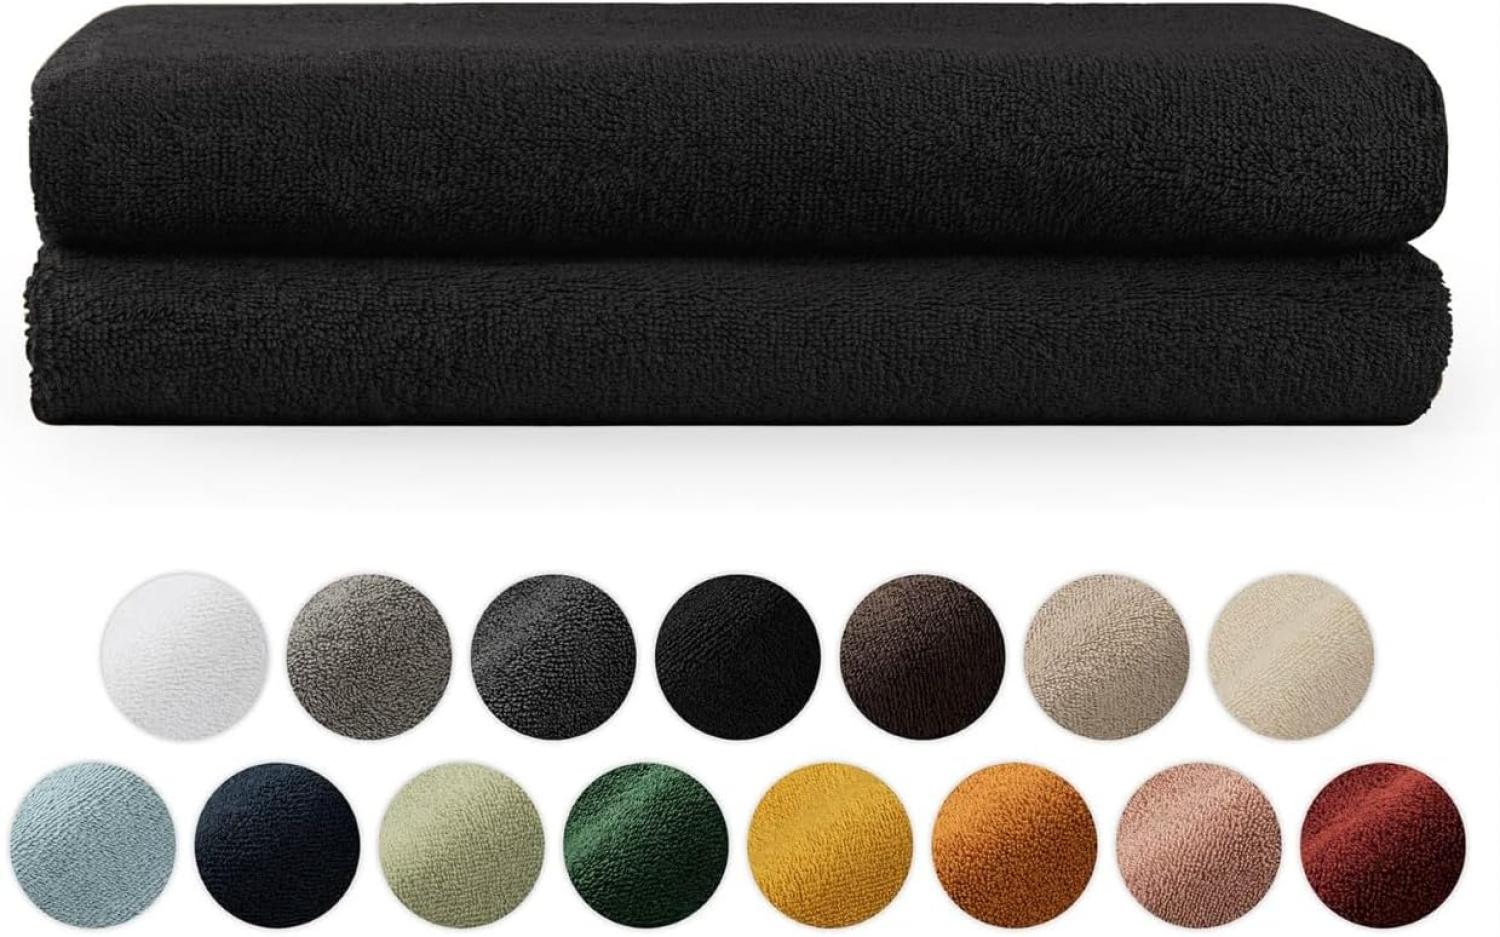 Blumtal Premium Frottier Handtücher Set mit Aufhängschlaufen - Baumwolle Oeko-TEX Zertifiziert, weich, saugstark - 2X Badetuch (70x140 cm), Schwarz Bild 1